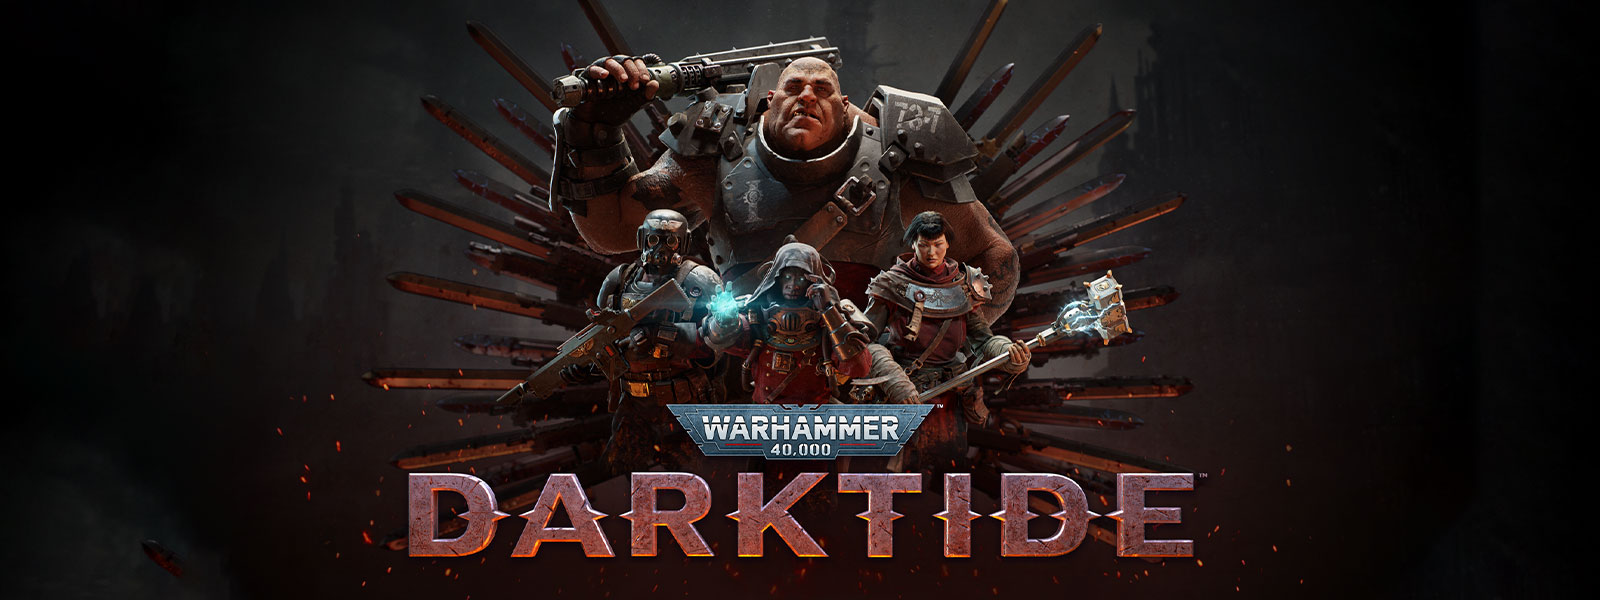 Warhammer 40,000: Darktide, skupina postáv v zbroji pózuje pred motívom čepele.